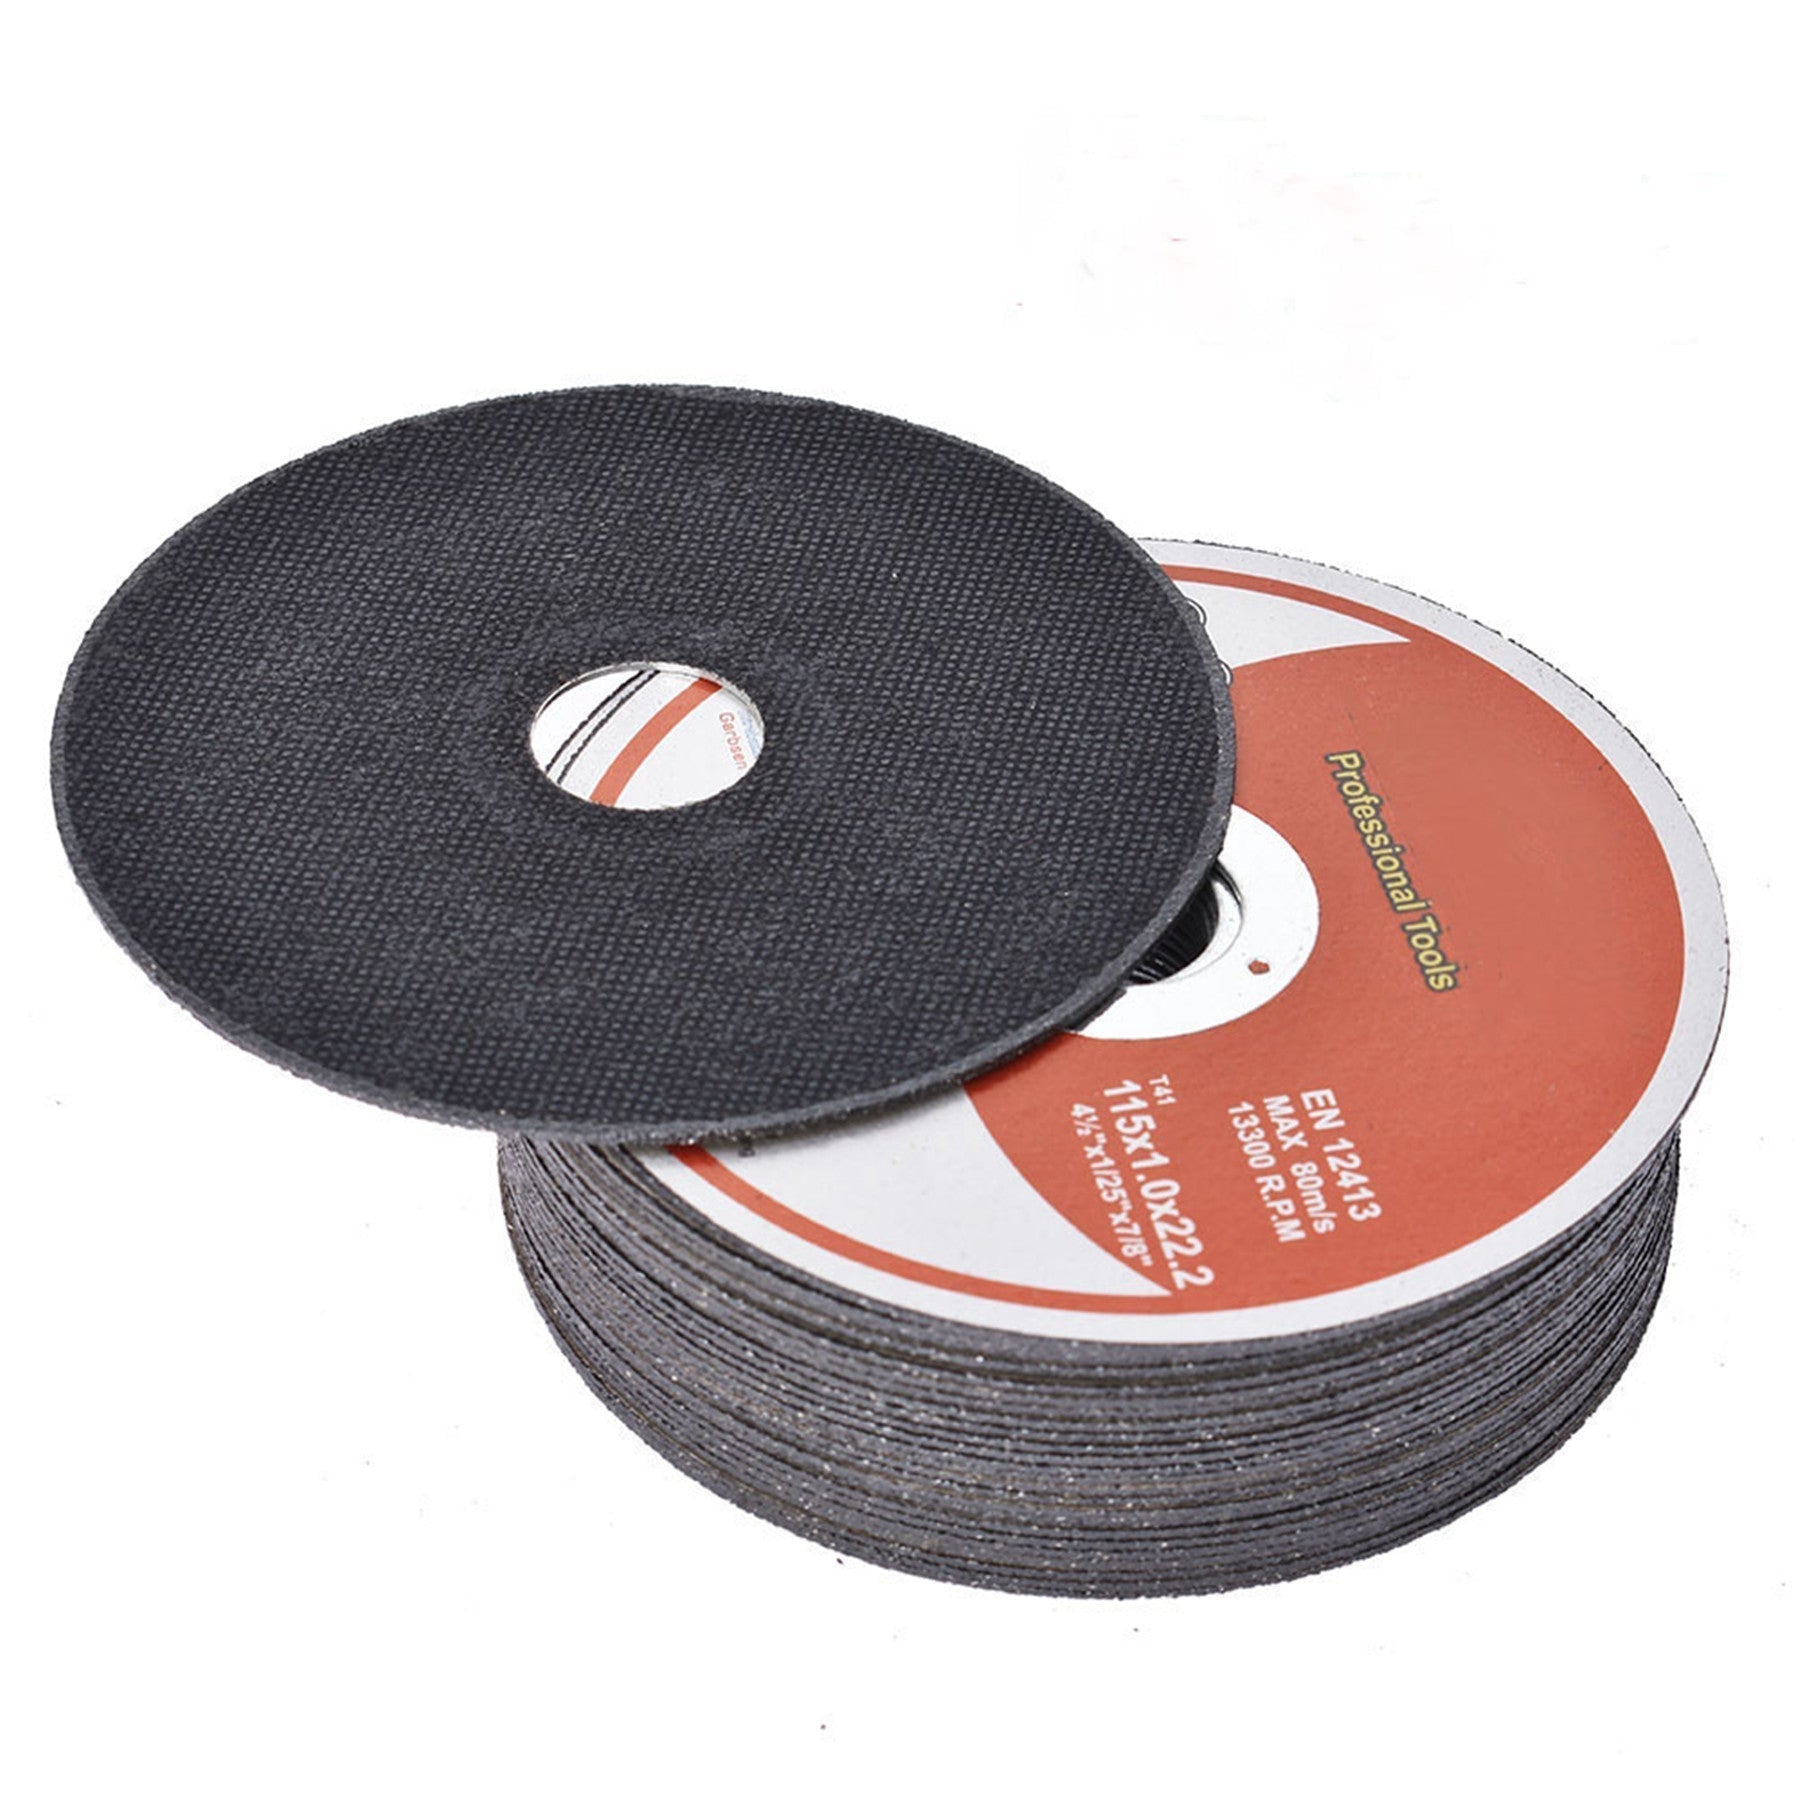 findmall 50Pcs 4.5"x.040"x7/8" Metal Stainless Steel Cut-off Wheel Cutting Discs FINDMALLPARTS